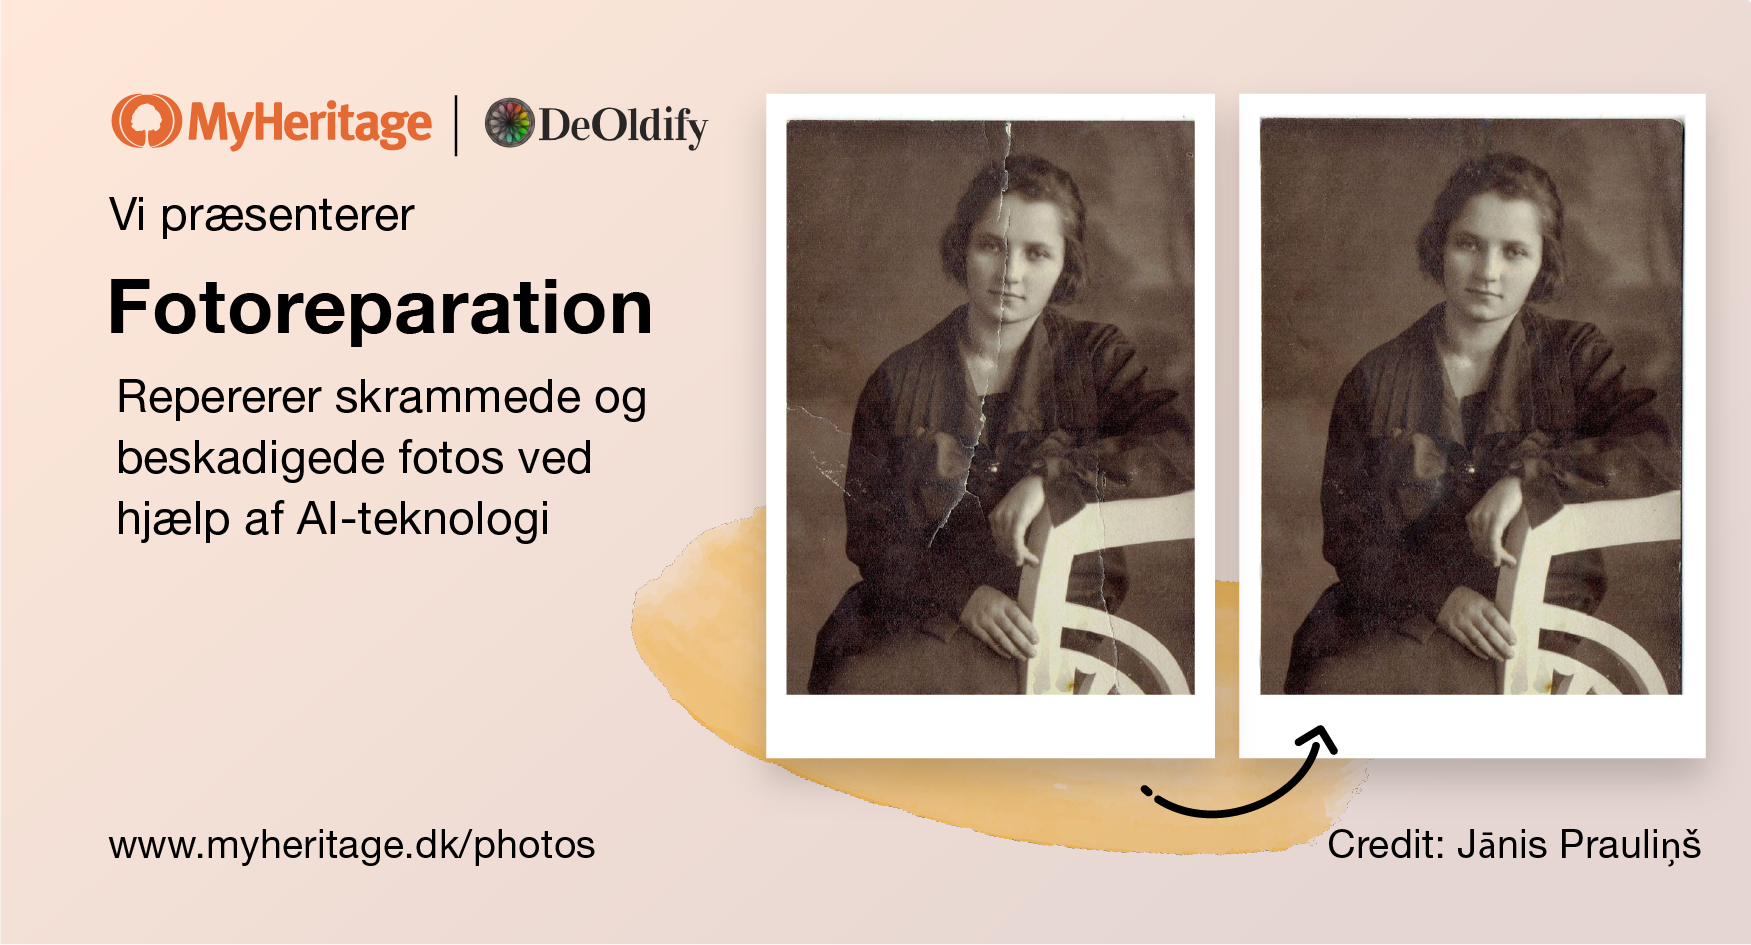 Vi præsenterer Fotoreparation: Ny funktion til automatisk reparation af ridsede og beskadigede fotos